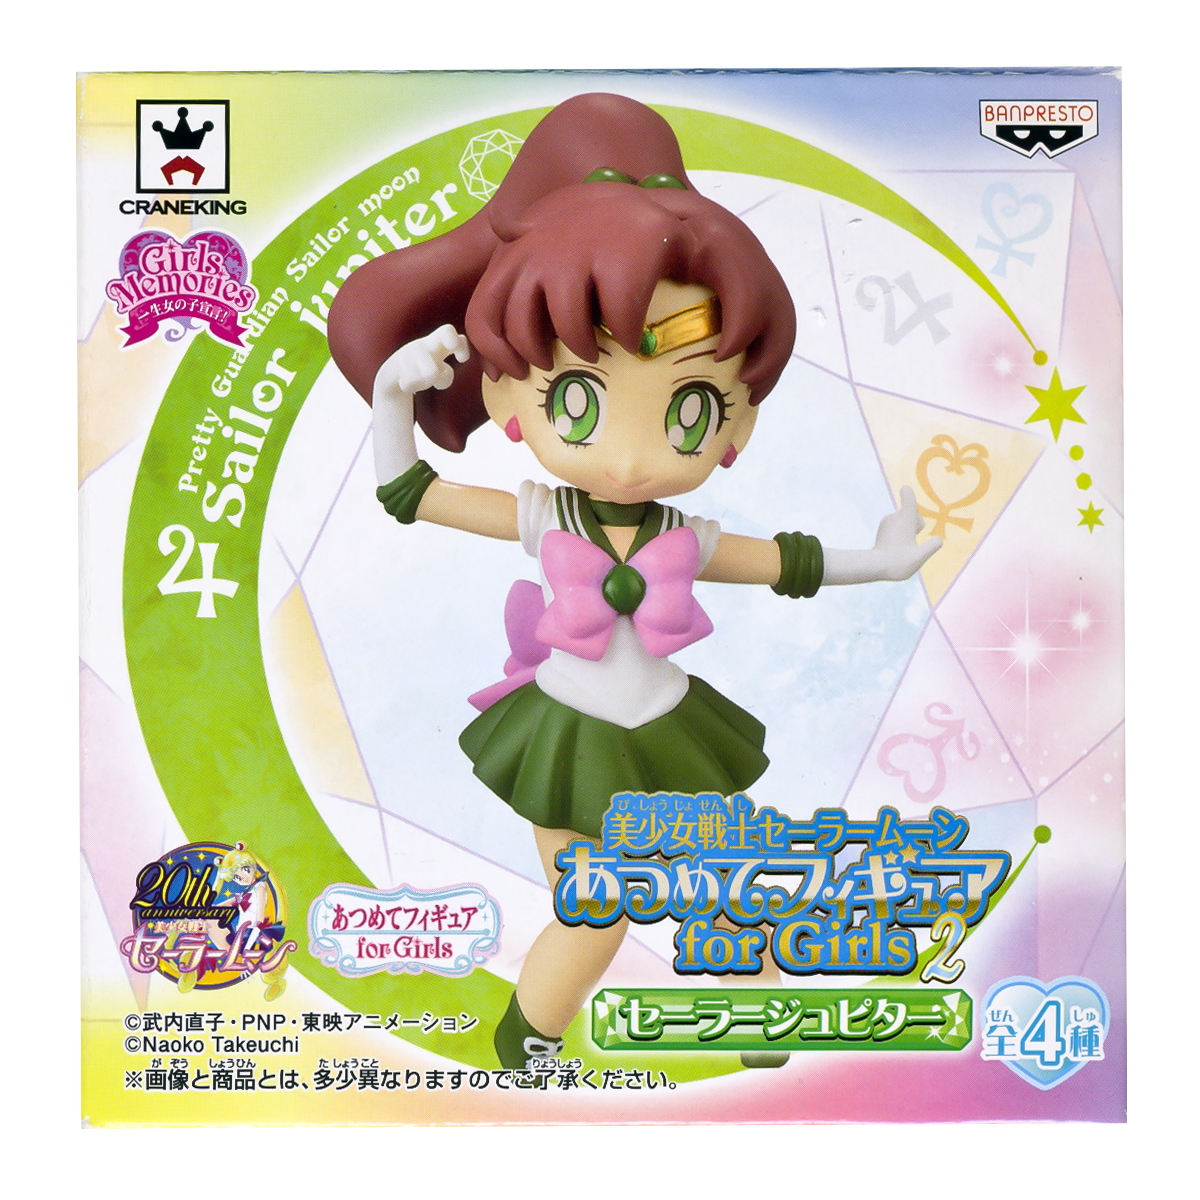 Sailor Jupiter Atsumete Trading Figure Banpresto Anime Statue Doll 20th Anniversary Special